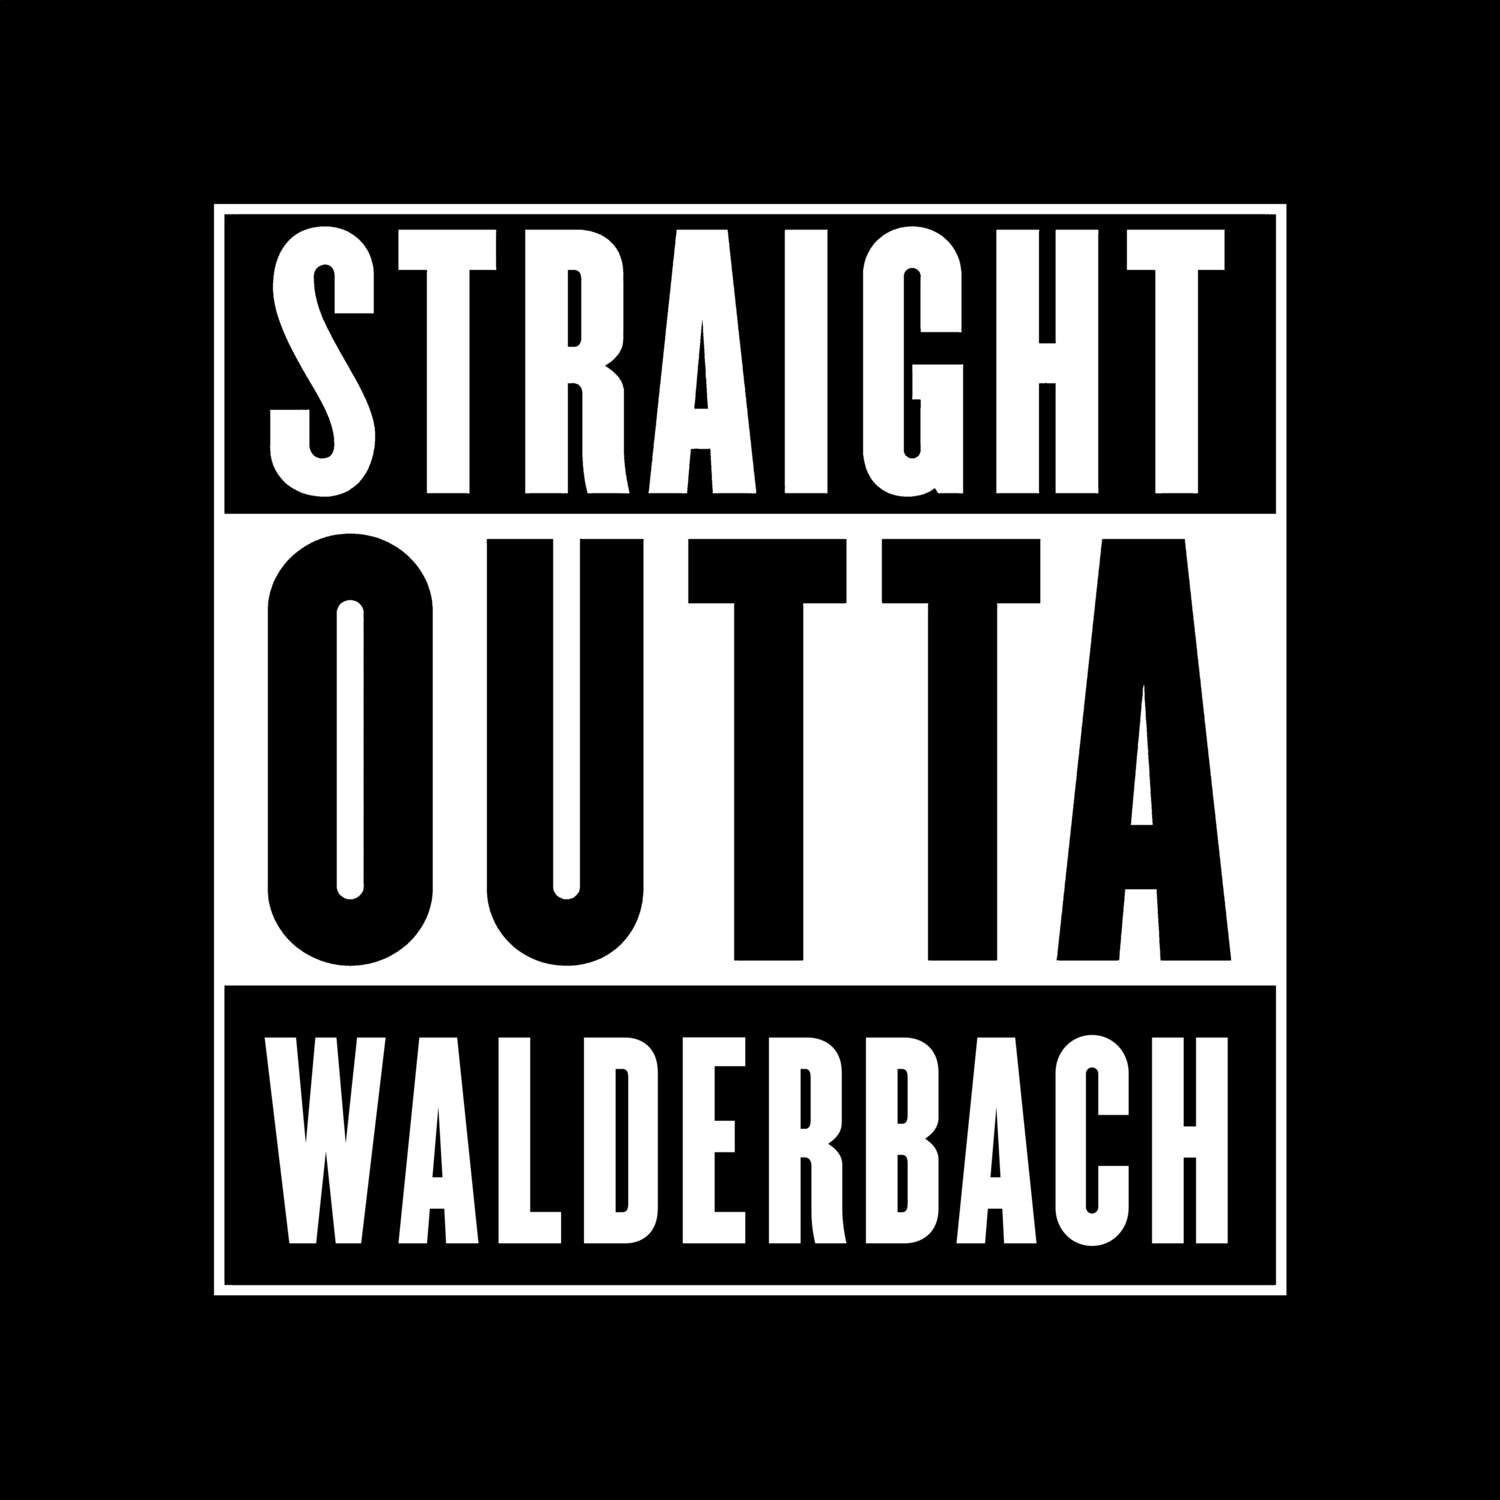 Walderbach T-Shirt »Straight Outta«